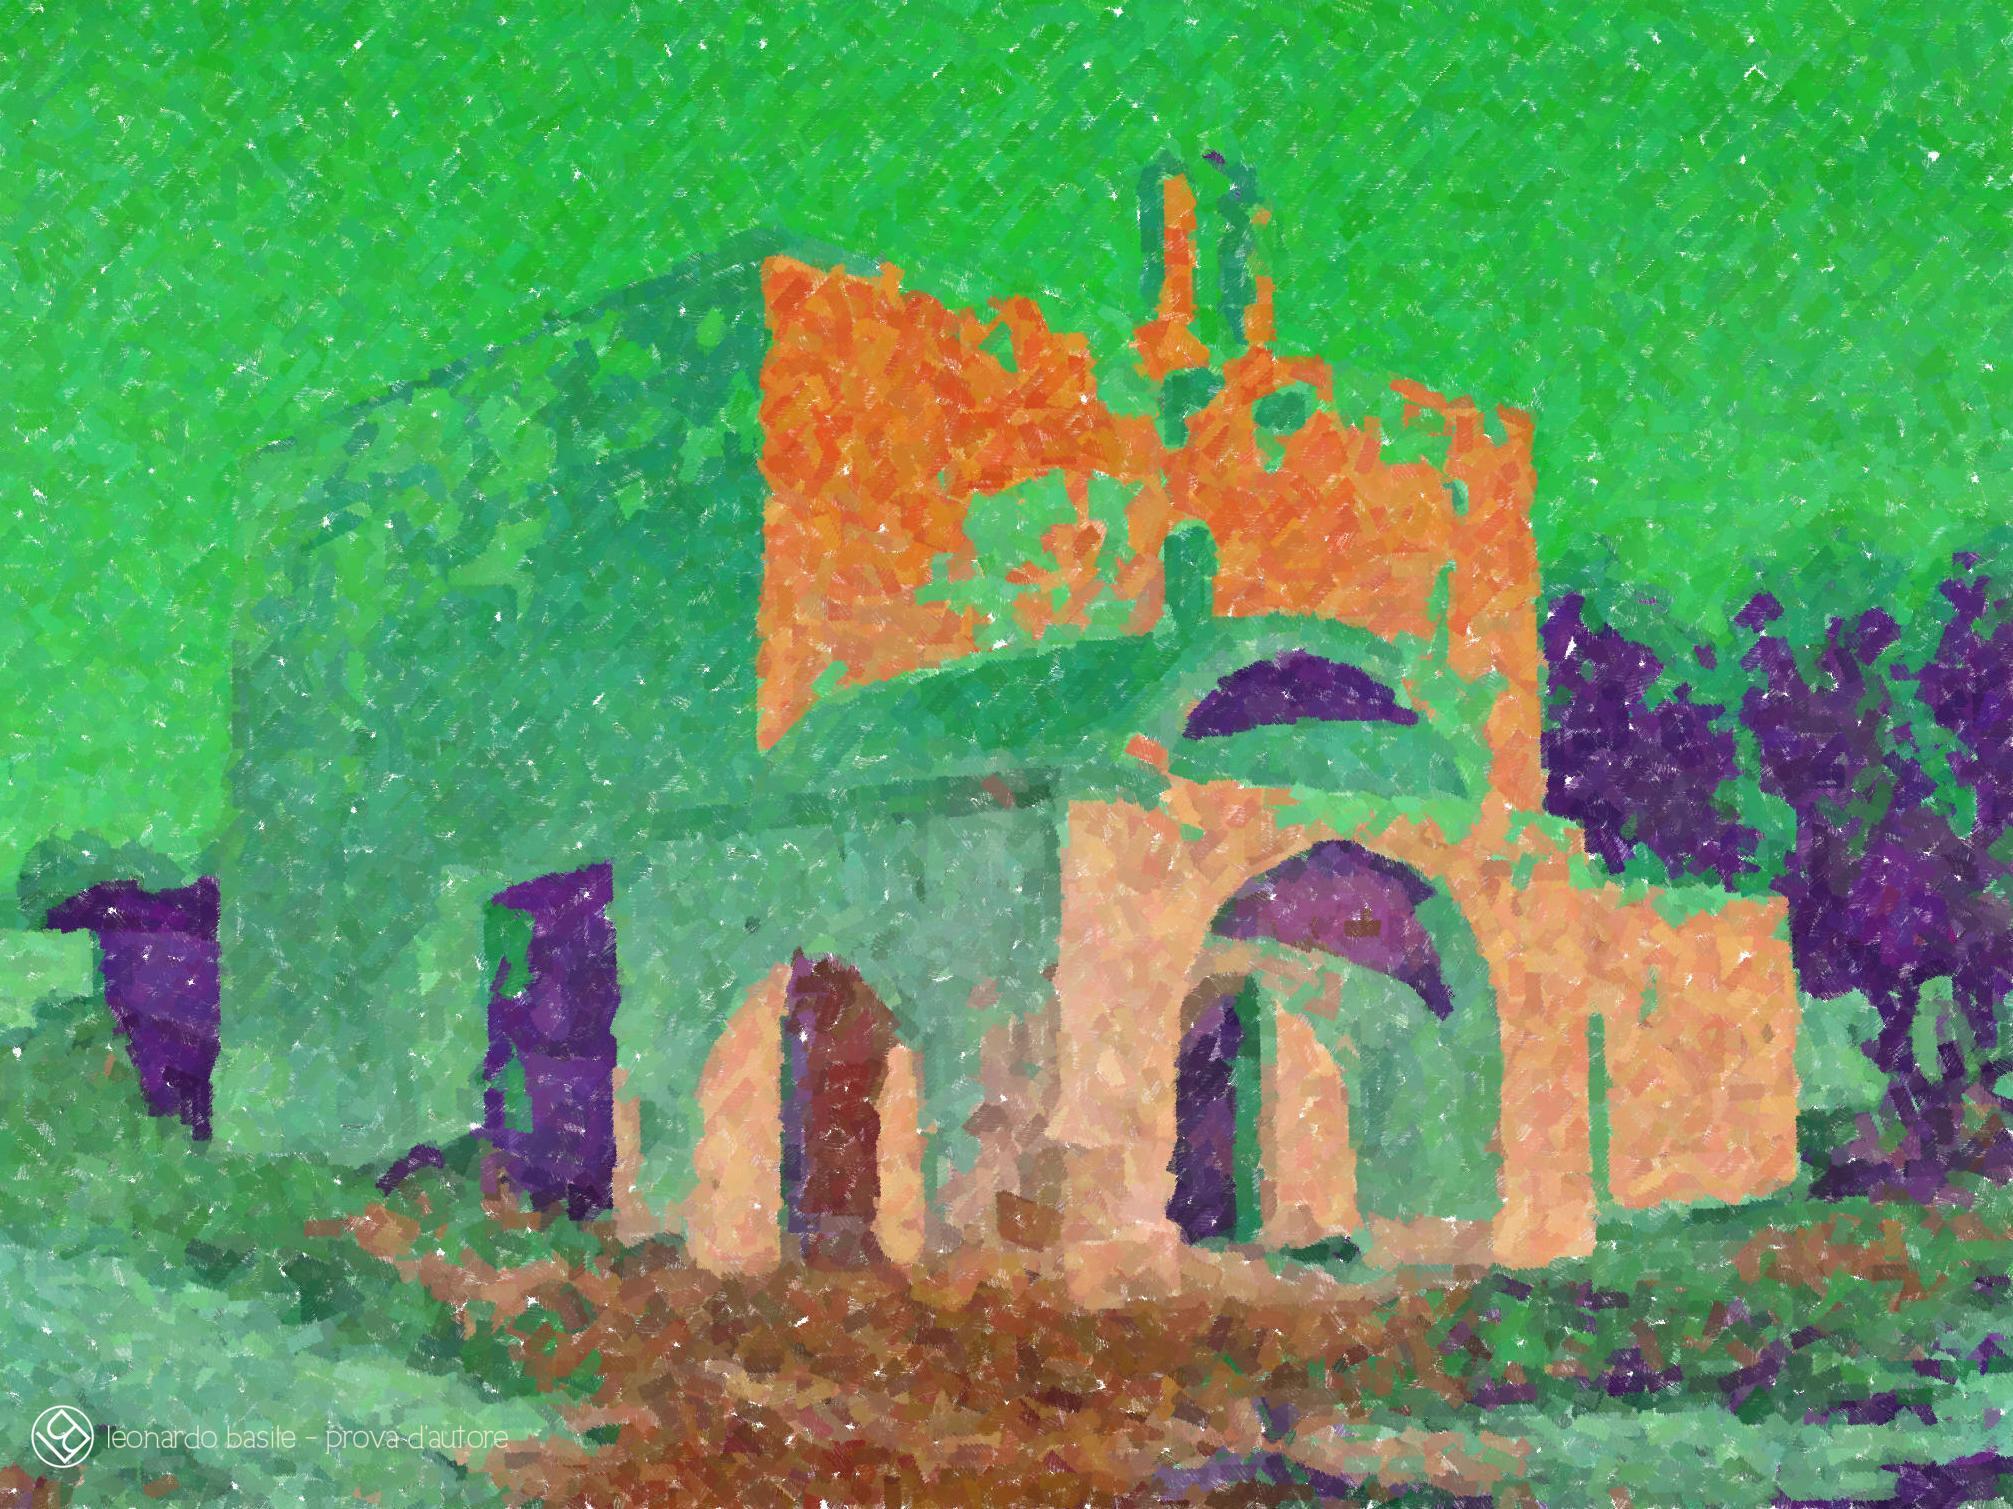 Elaborazione grafica da una fotografia della Chiesa medievale dell'Annunziata di Bari/S.Spirito- 4